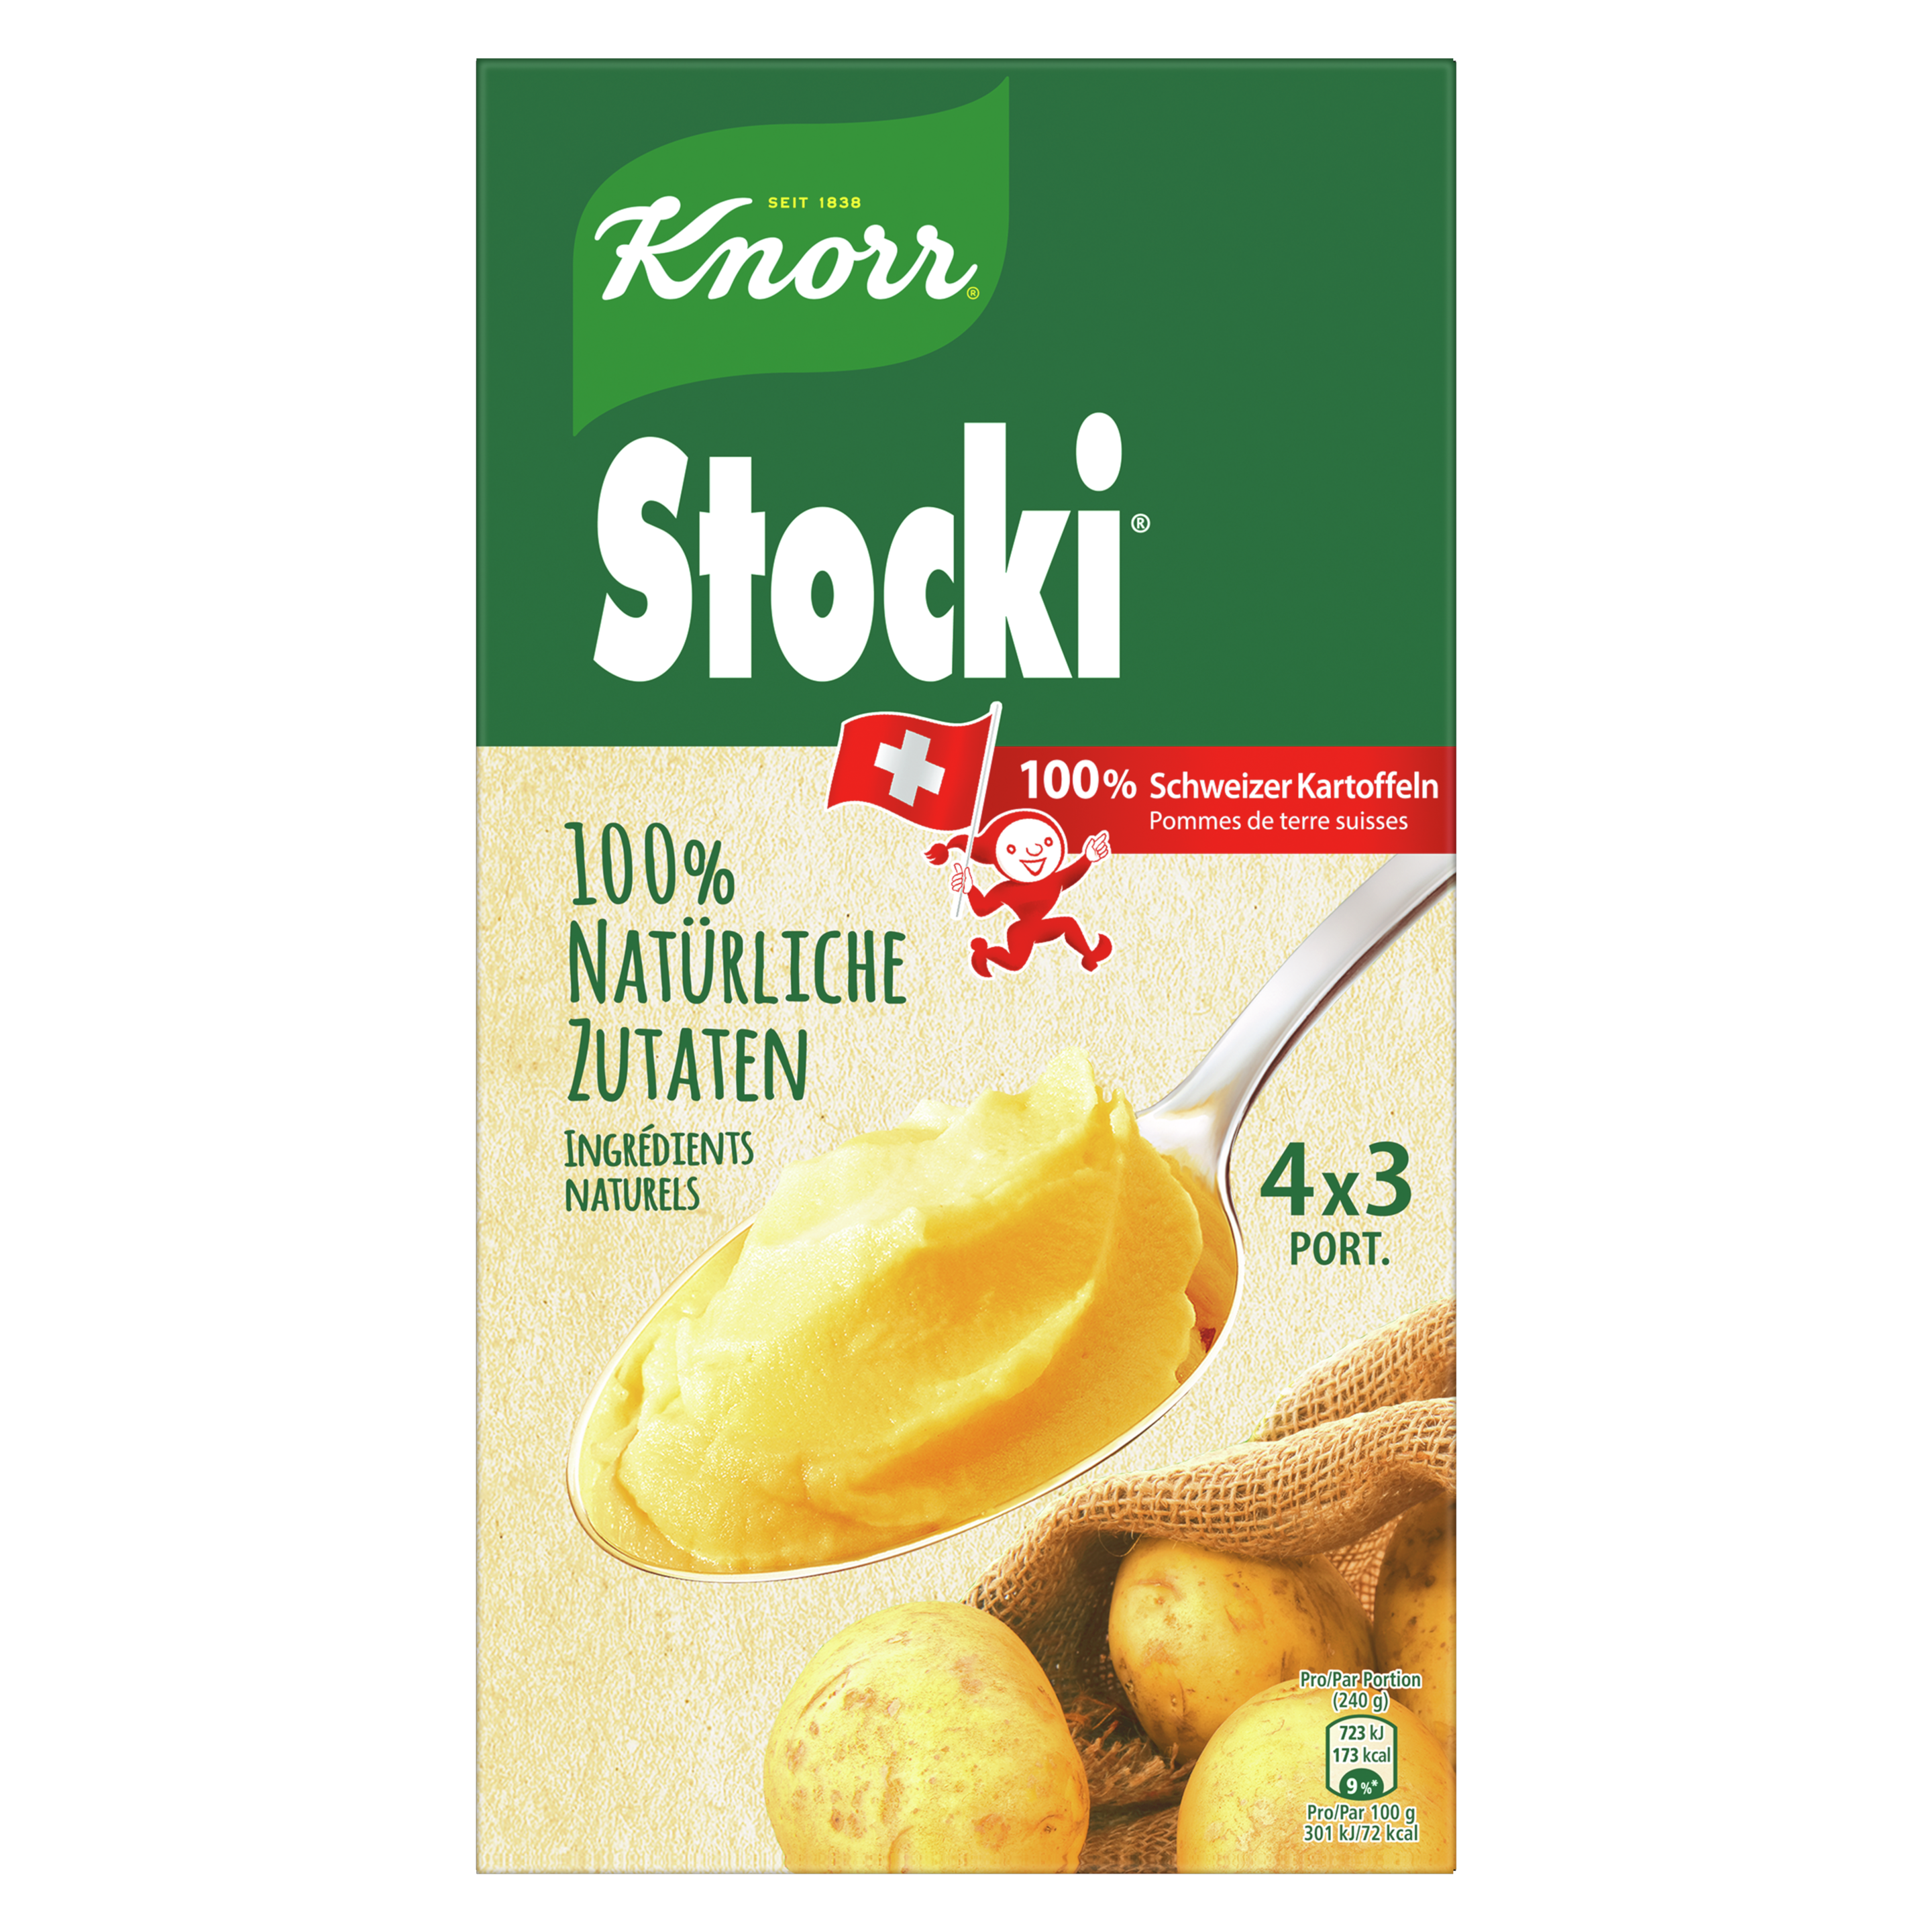 KNORR 100% natürliche Zutaten Stocki Kartoffelstock Packung 4 x 3 Portionen